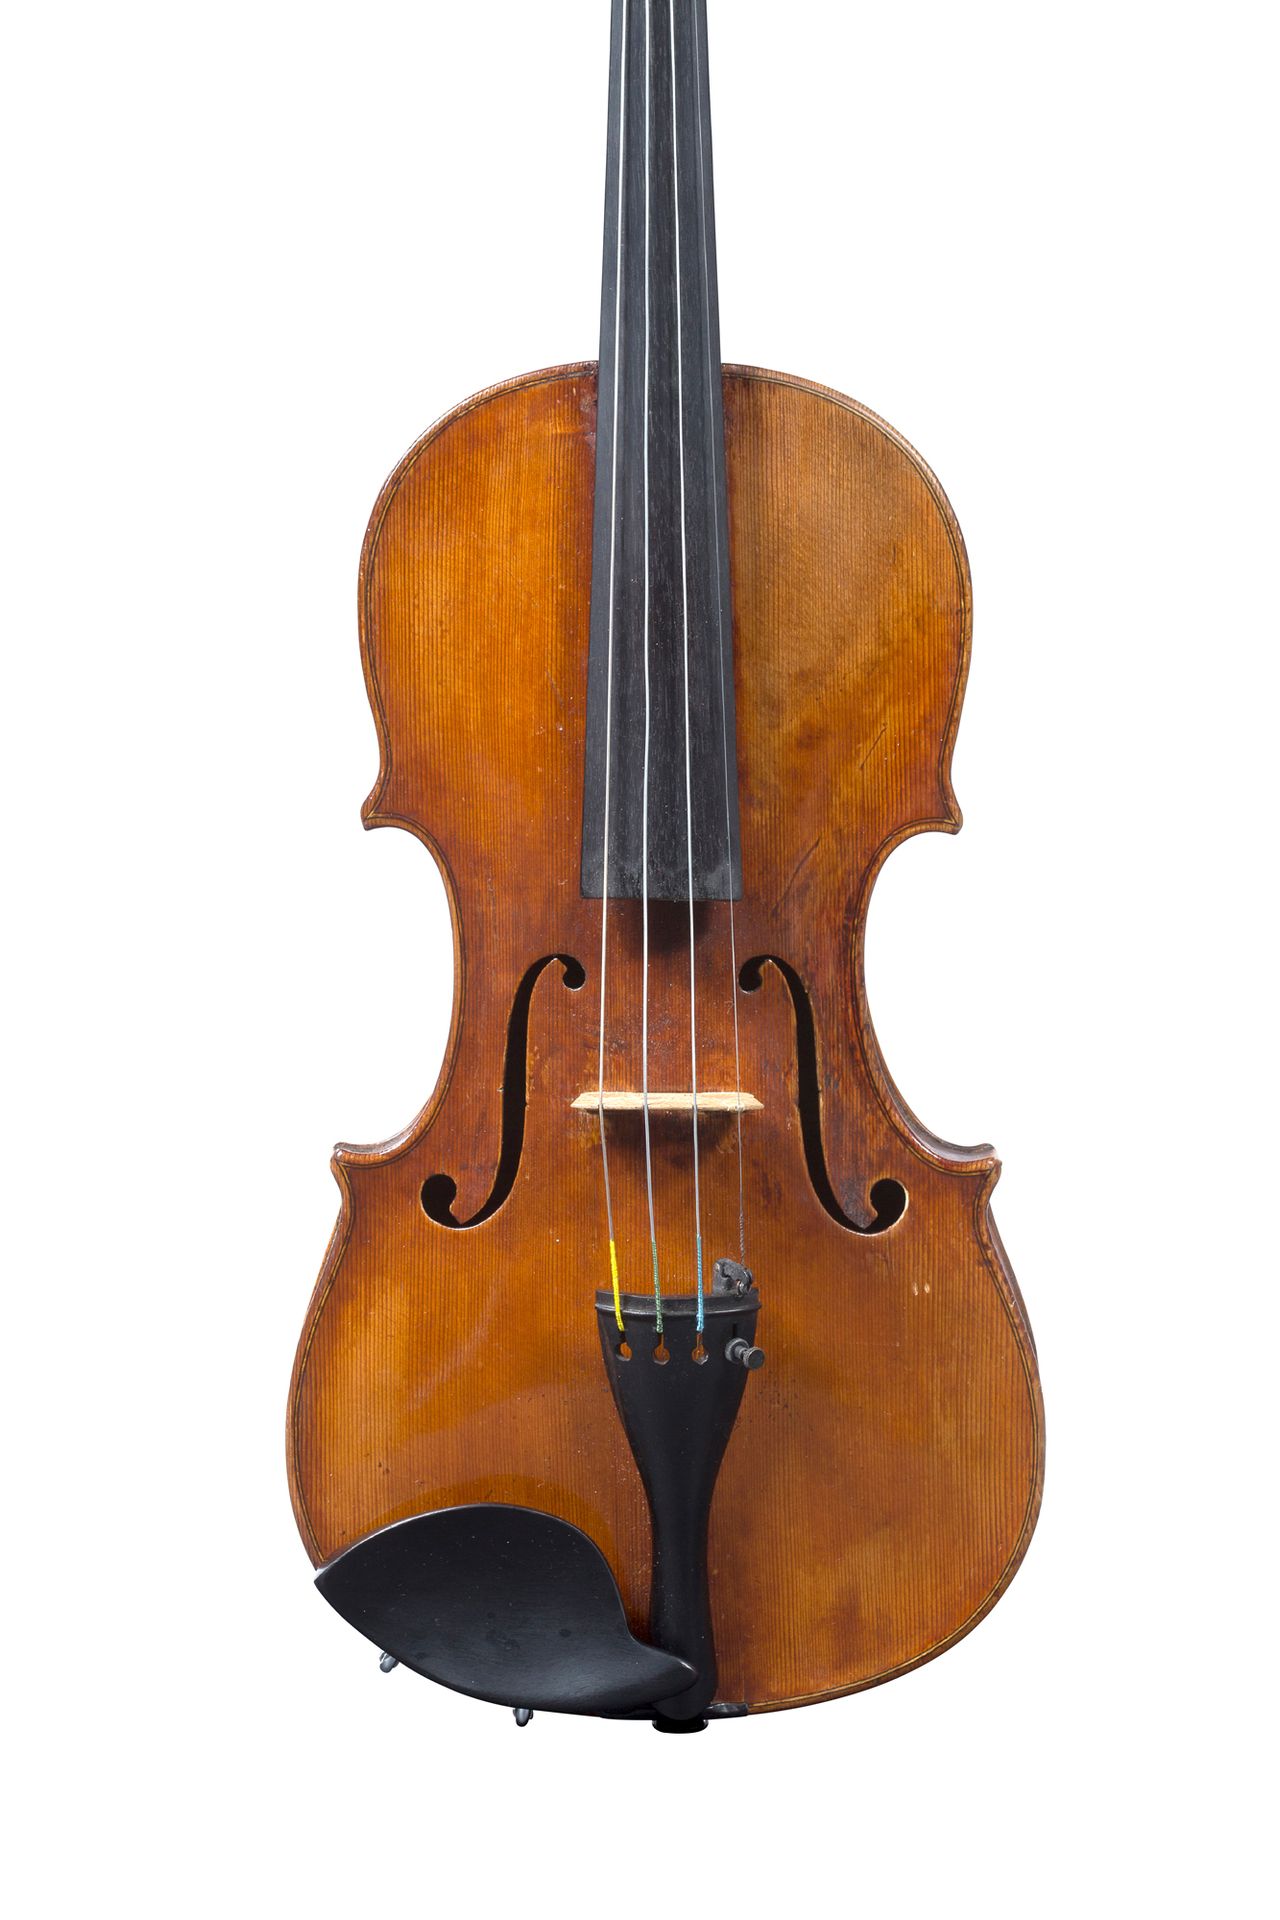 Null 19世纪德国哈雷金小提琴
背面装饰有 "CAT "字样，内部有铁质标记
Testore的伪装标签
较新的面板
顶部和侧面有各种修复，背面的标签下有一块&hellip;